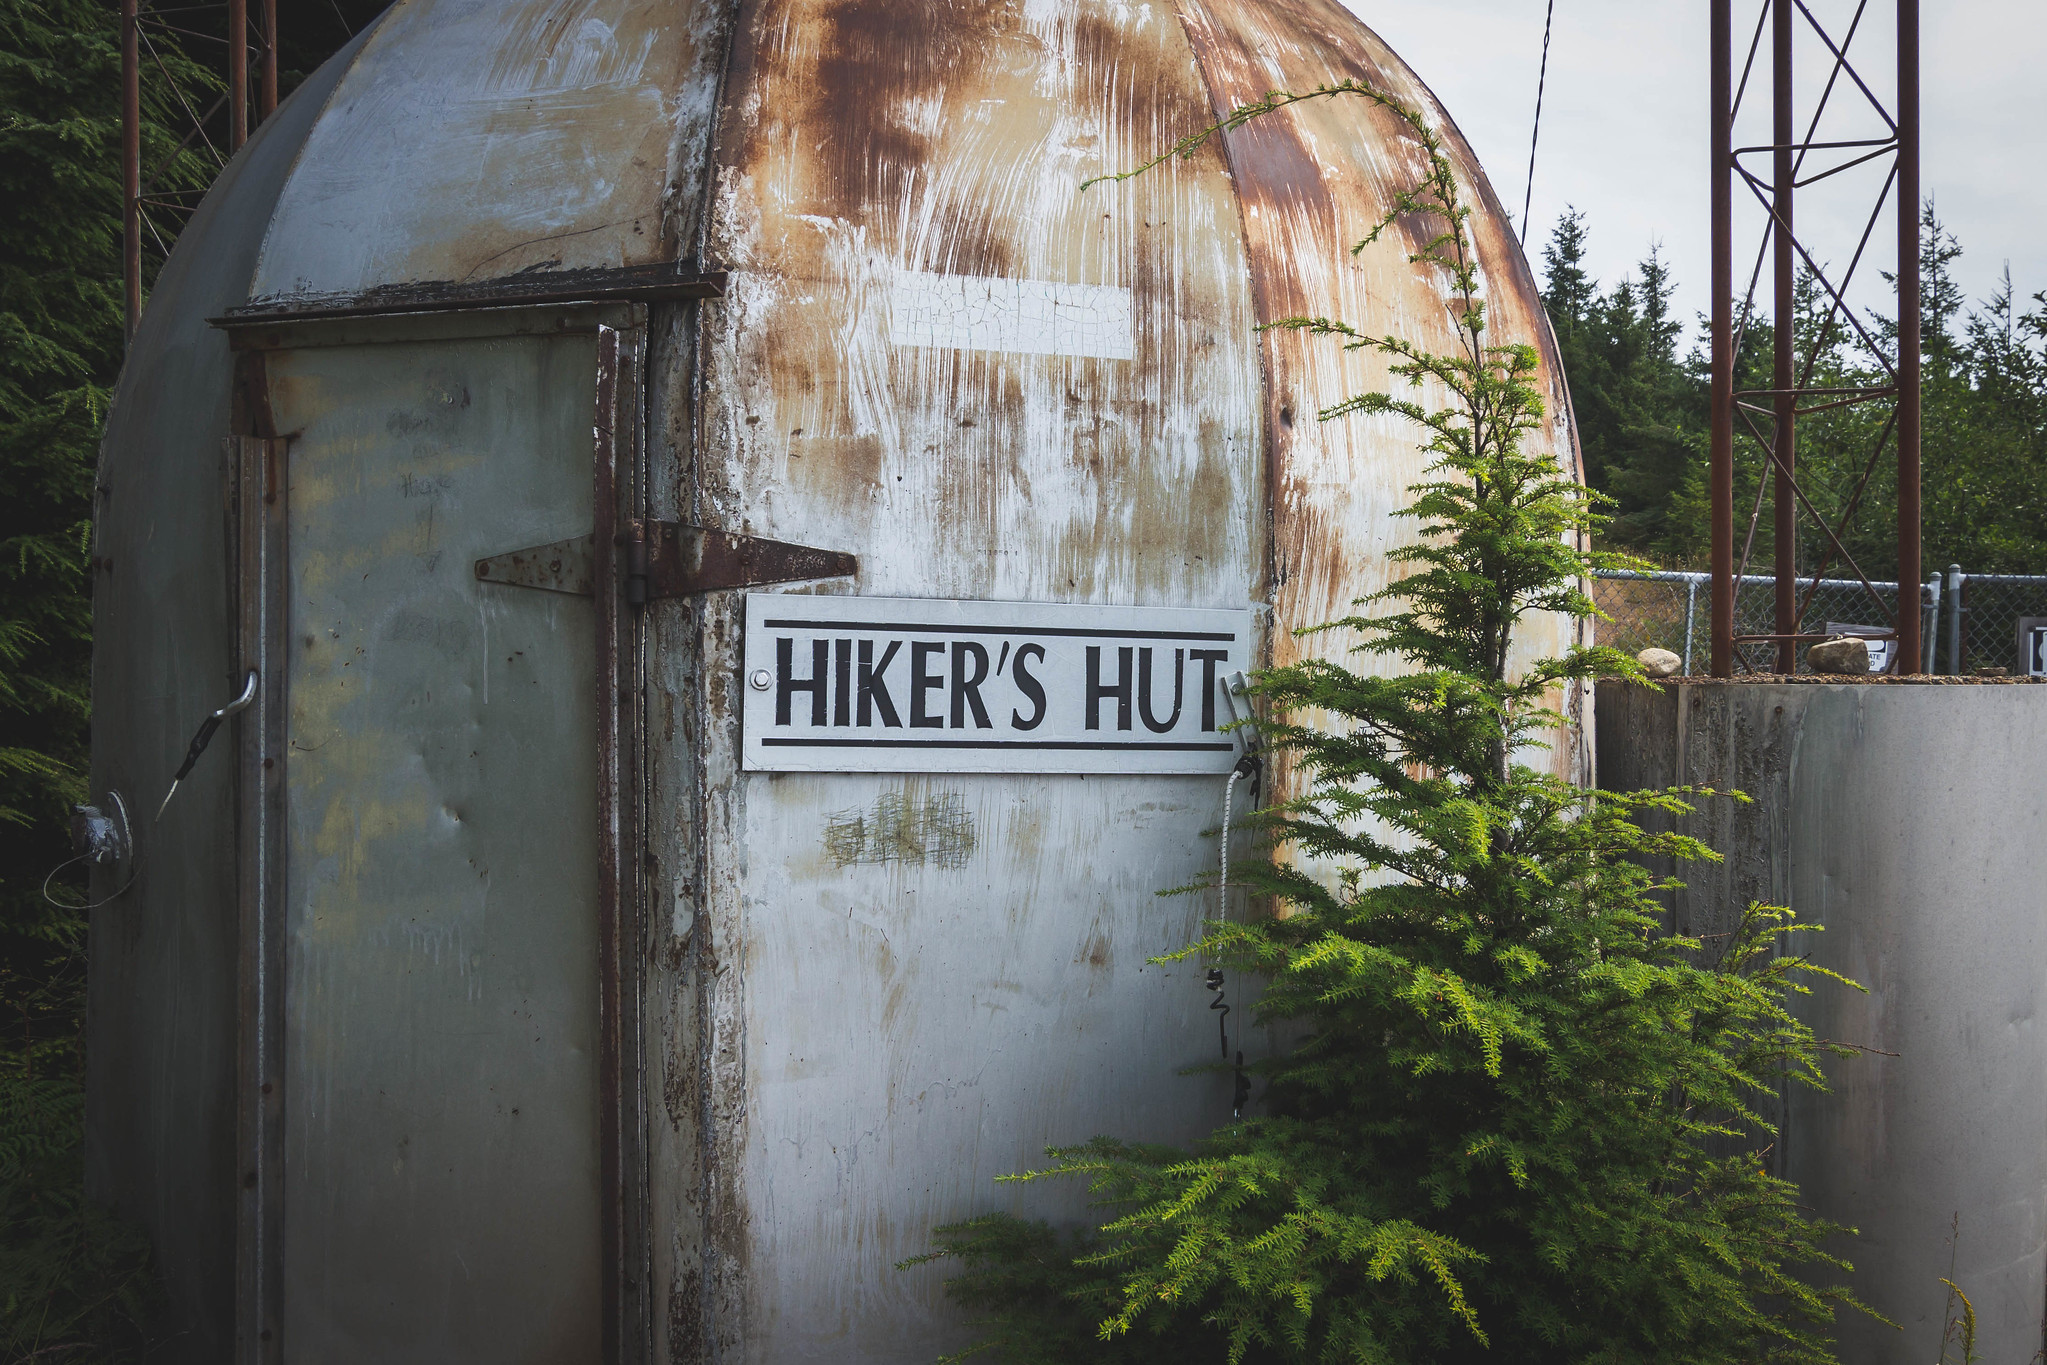 Hiker's hut